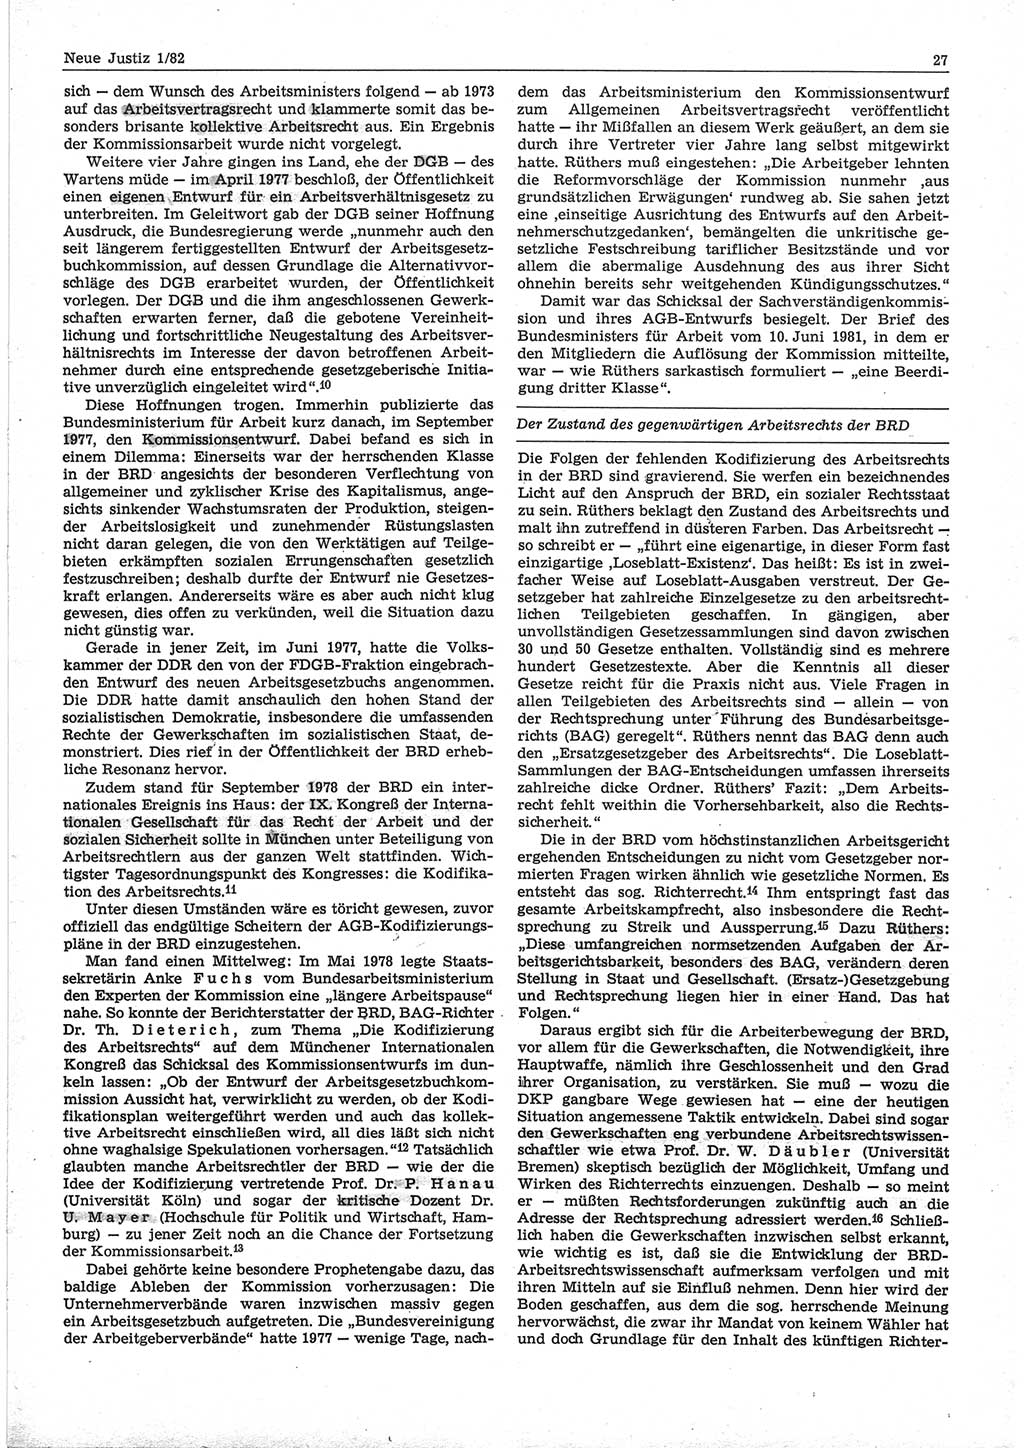 Neue Justiz (NJ), Zeitschrift für sozialistisches Recht und Gesetzlichkeit [Deutsche Demokratische Republik (DDR)], 36. Jahrgang 1982, Seite 27 (NJ DDR 1982, S. 27)